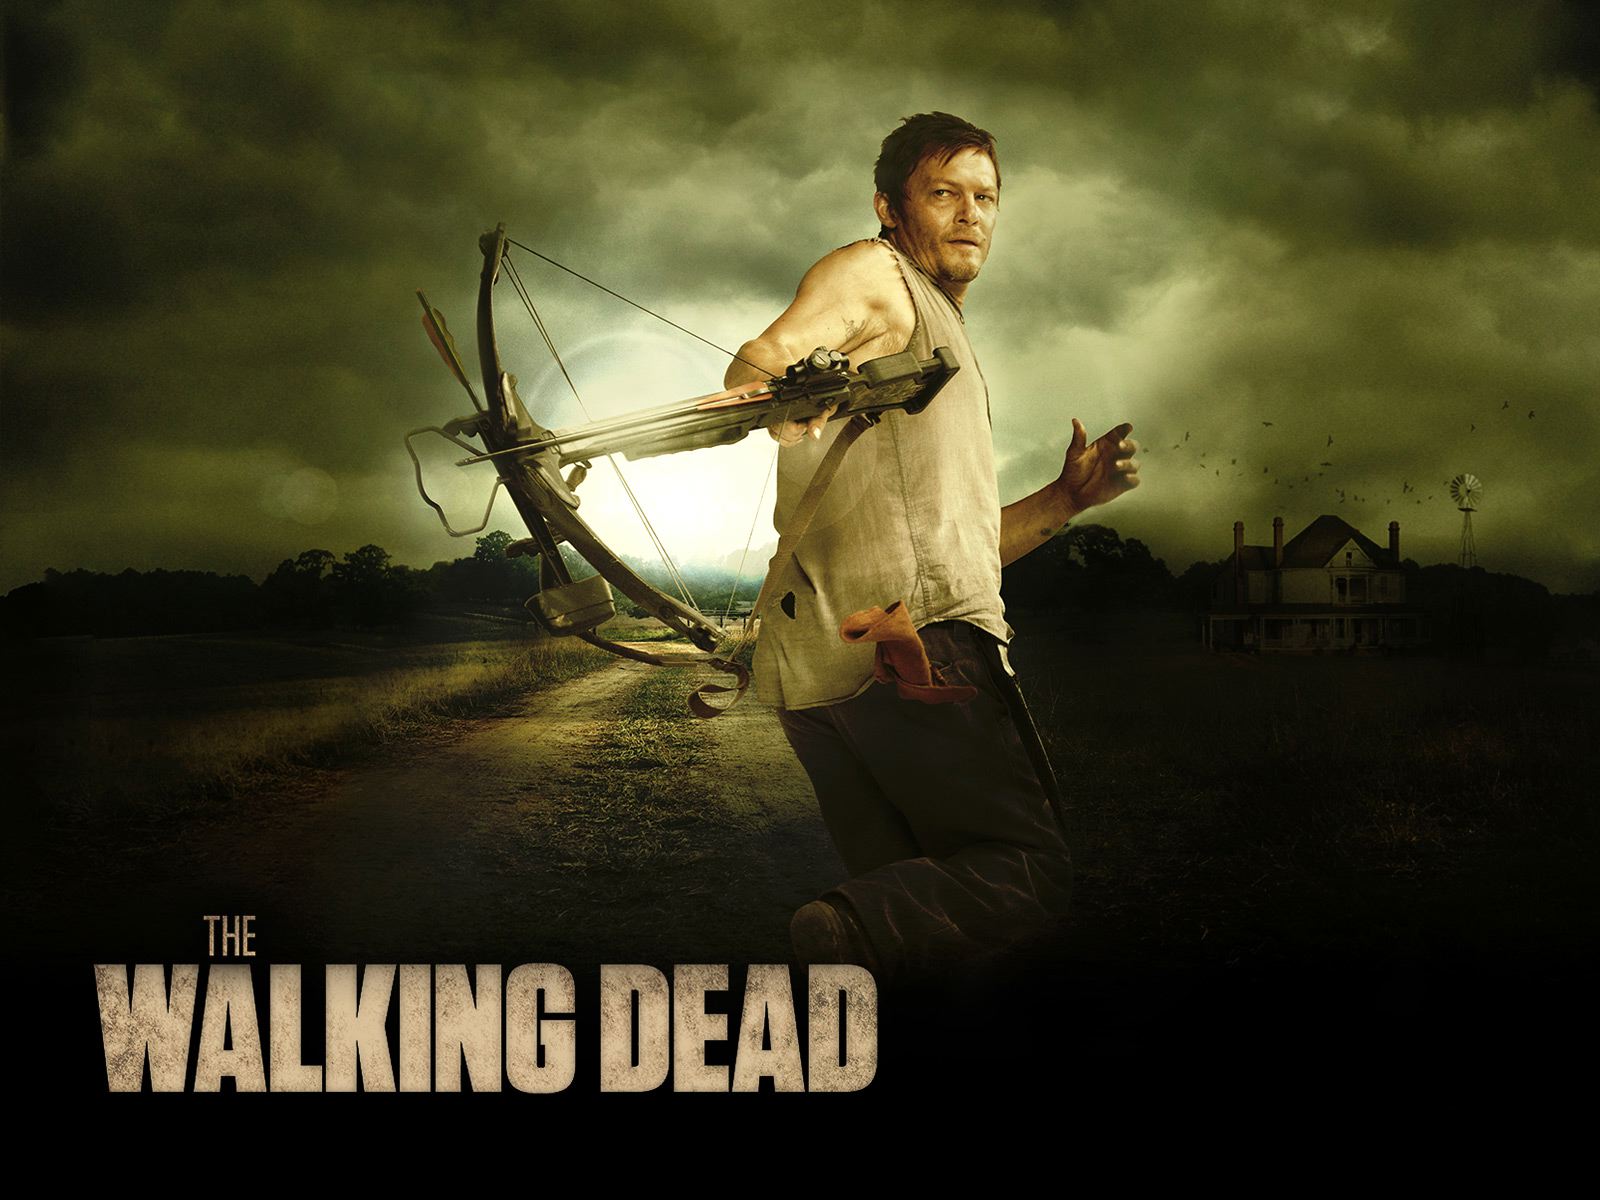 The Walking Dead Wallpaper Hd | View HD - Part 4